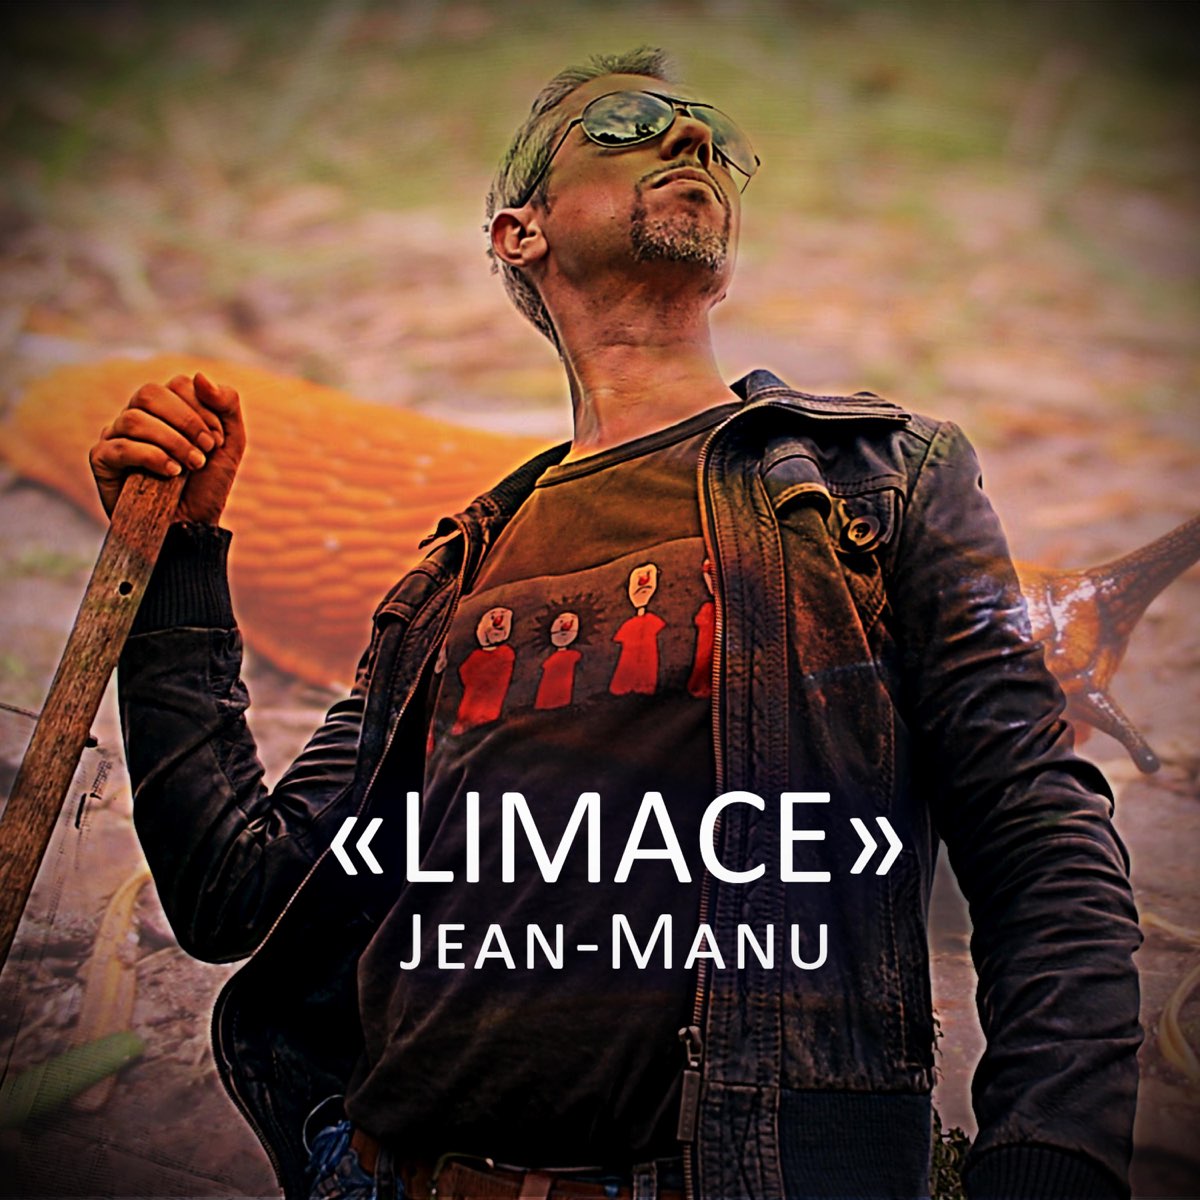 Limace - Single by Jean-Manu on Apple Music